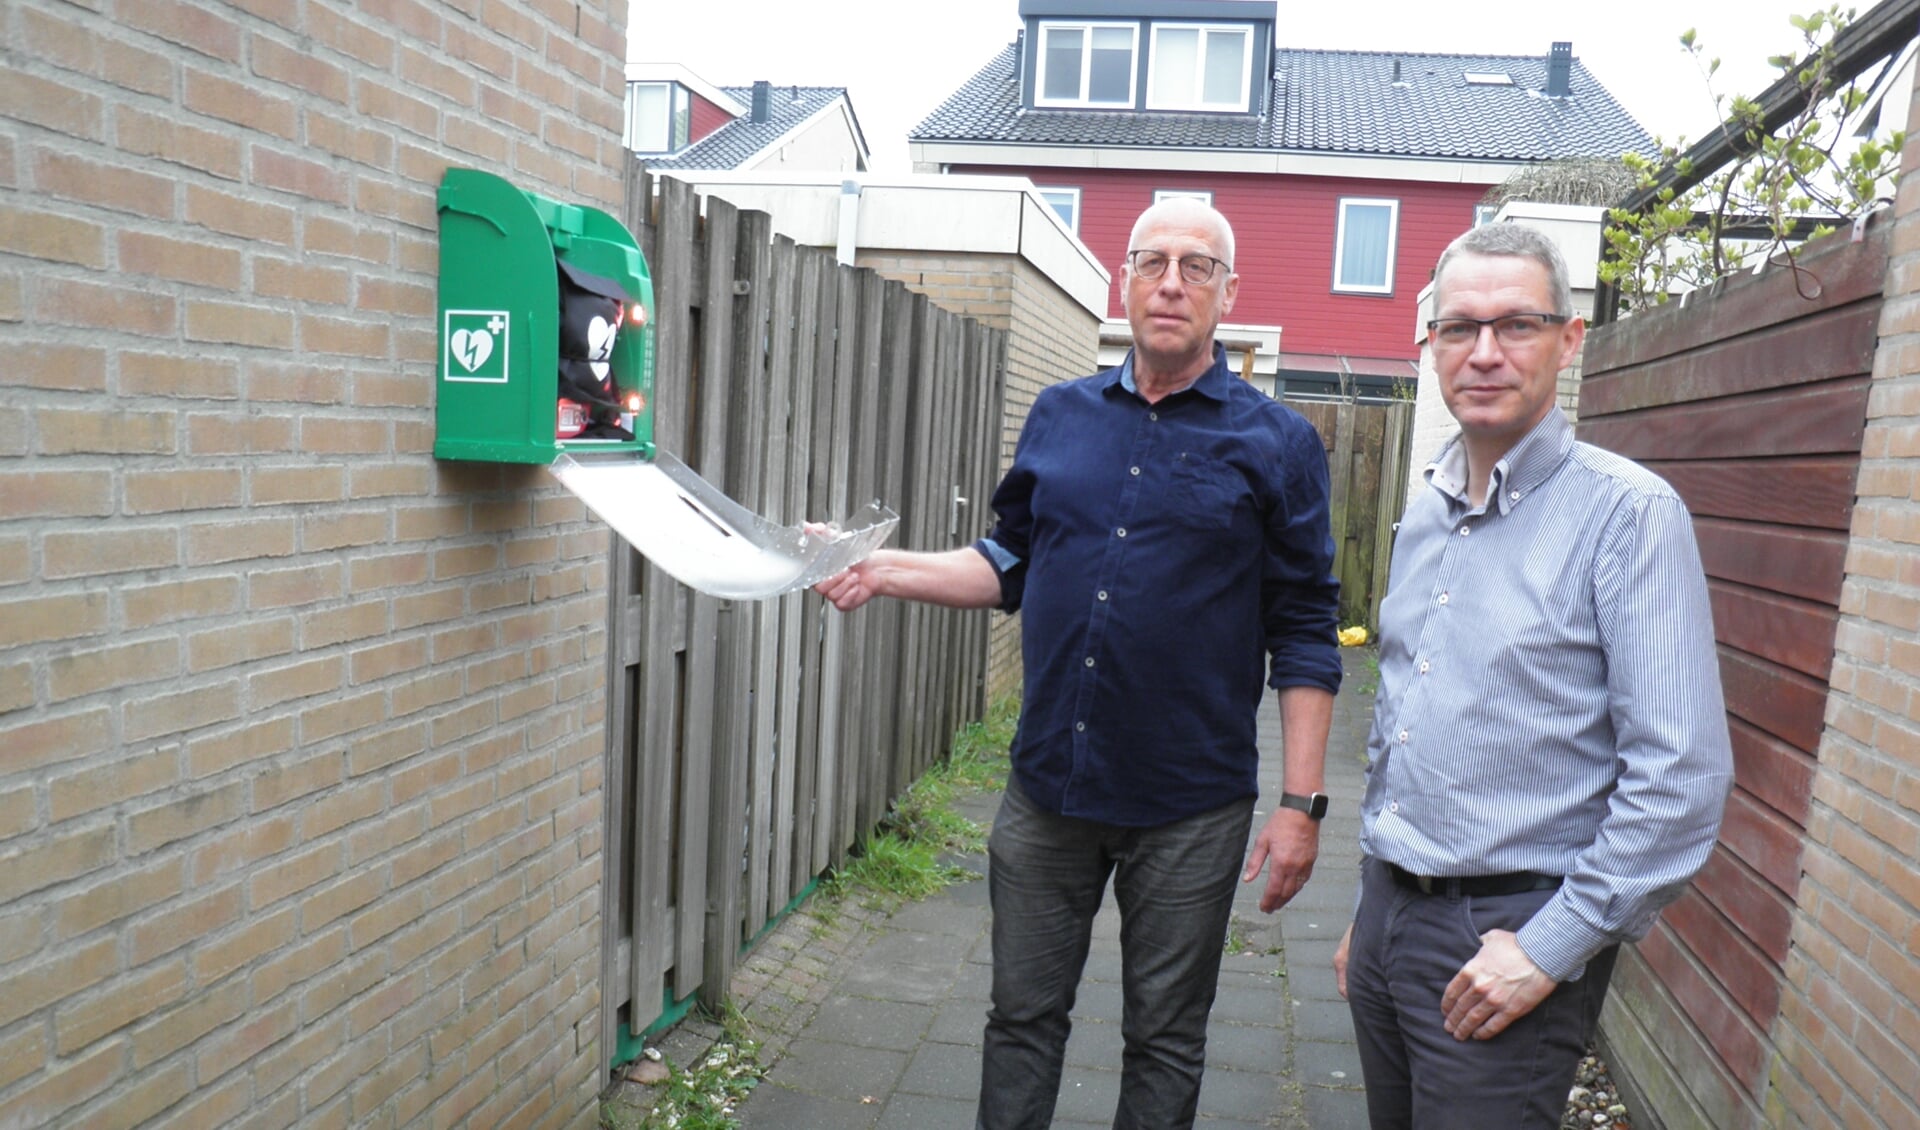 Rob Schaafsma (l) en Marco de Bruin tonen de AED aan de achterkant van de woning van Jonagoldhof 4 in de buurt De Boomgaard. Foto Kees van Rongen